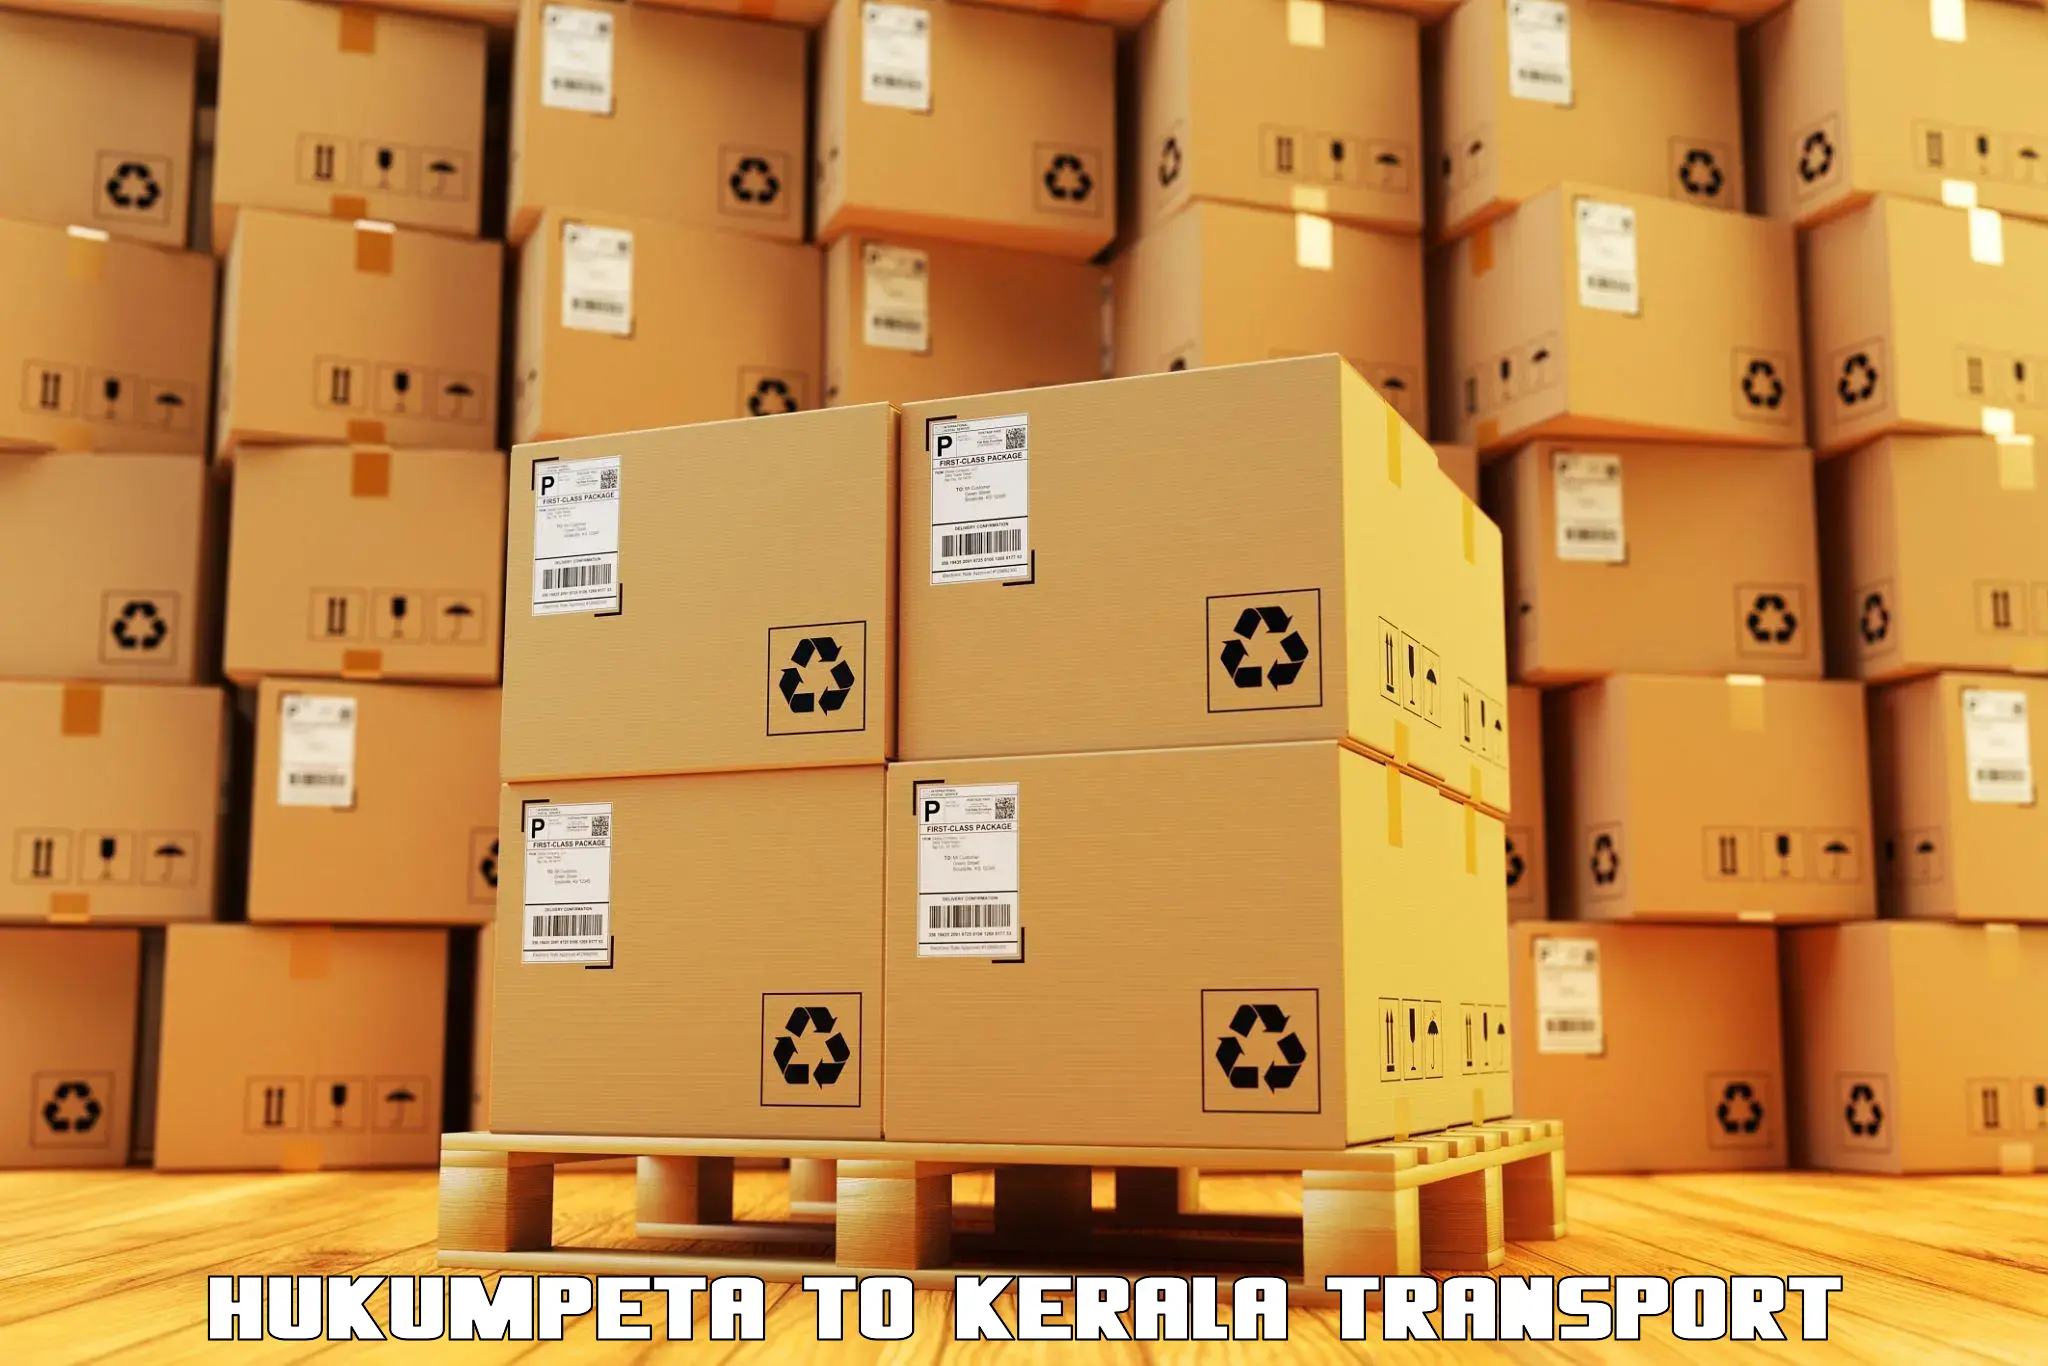 Container transport service Hukumpeta to Changanacherry